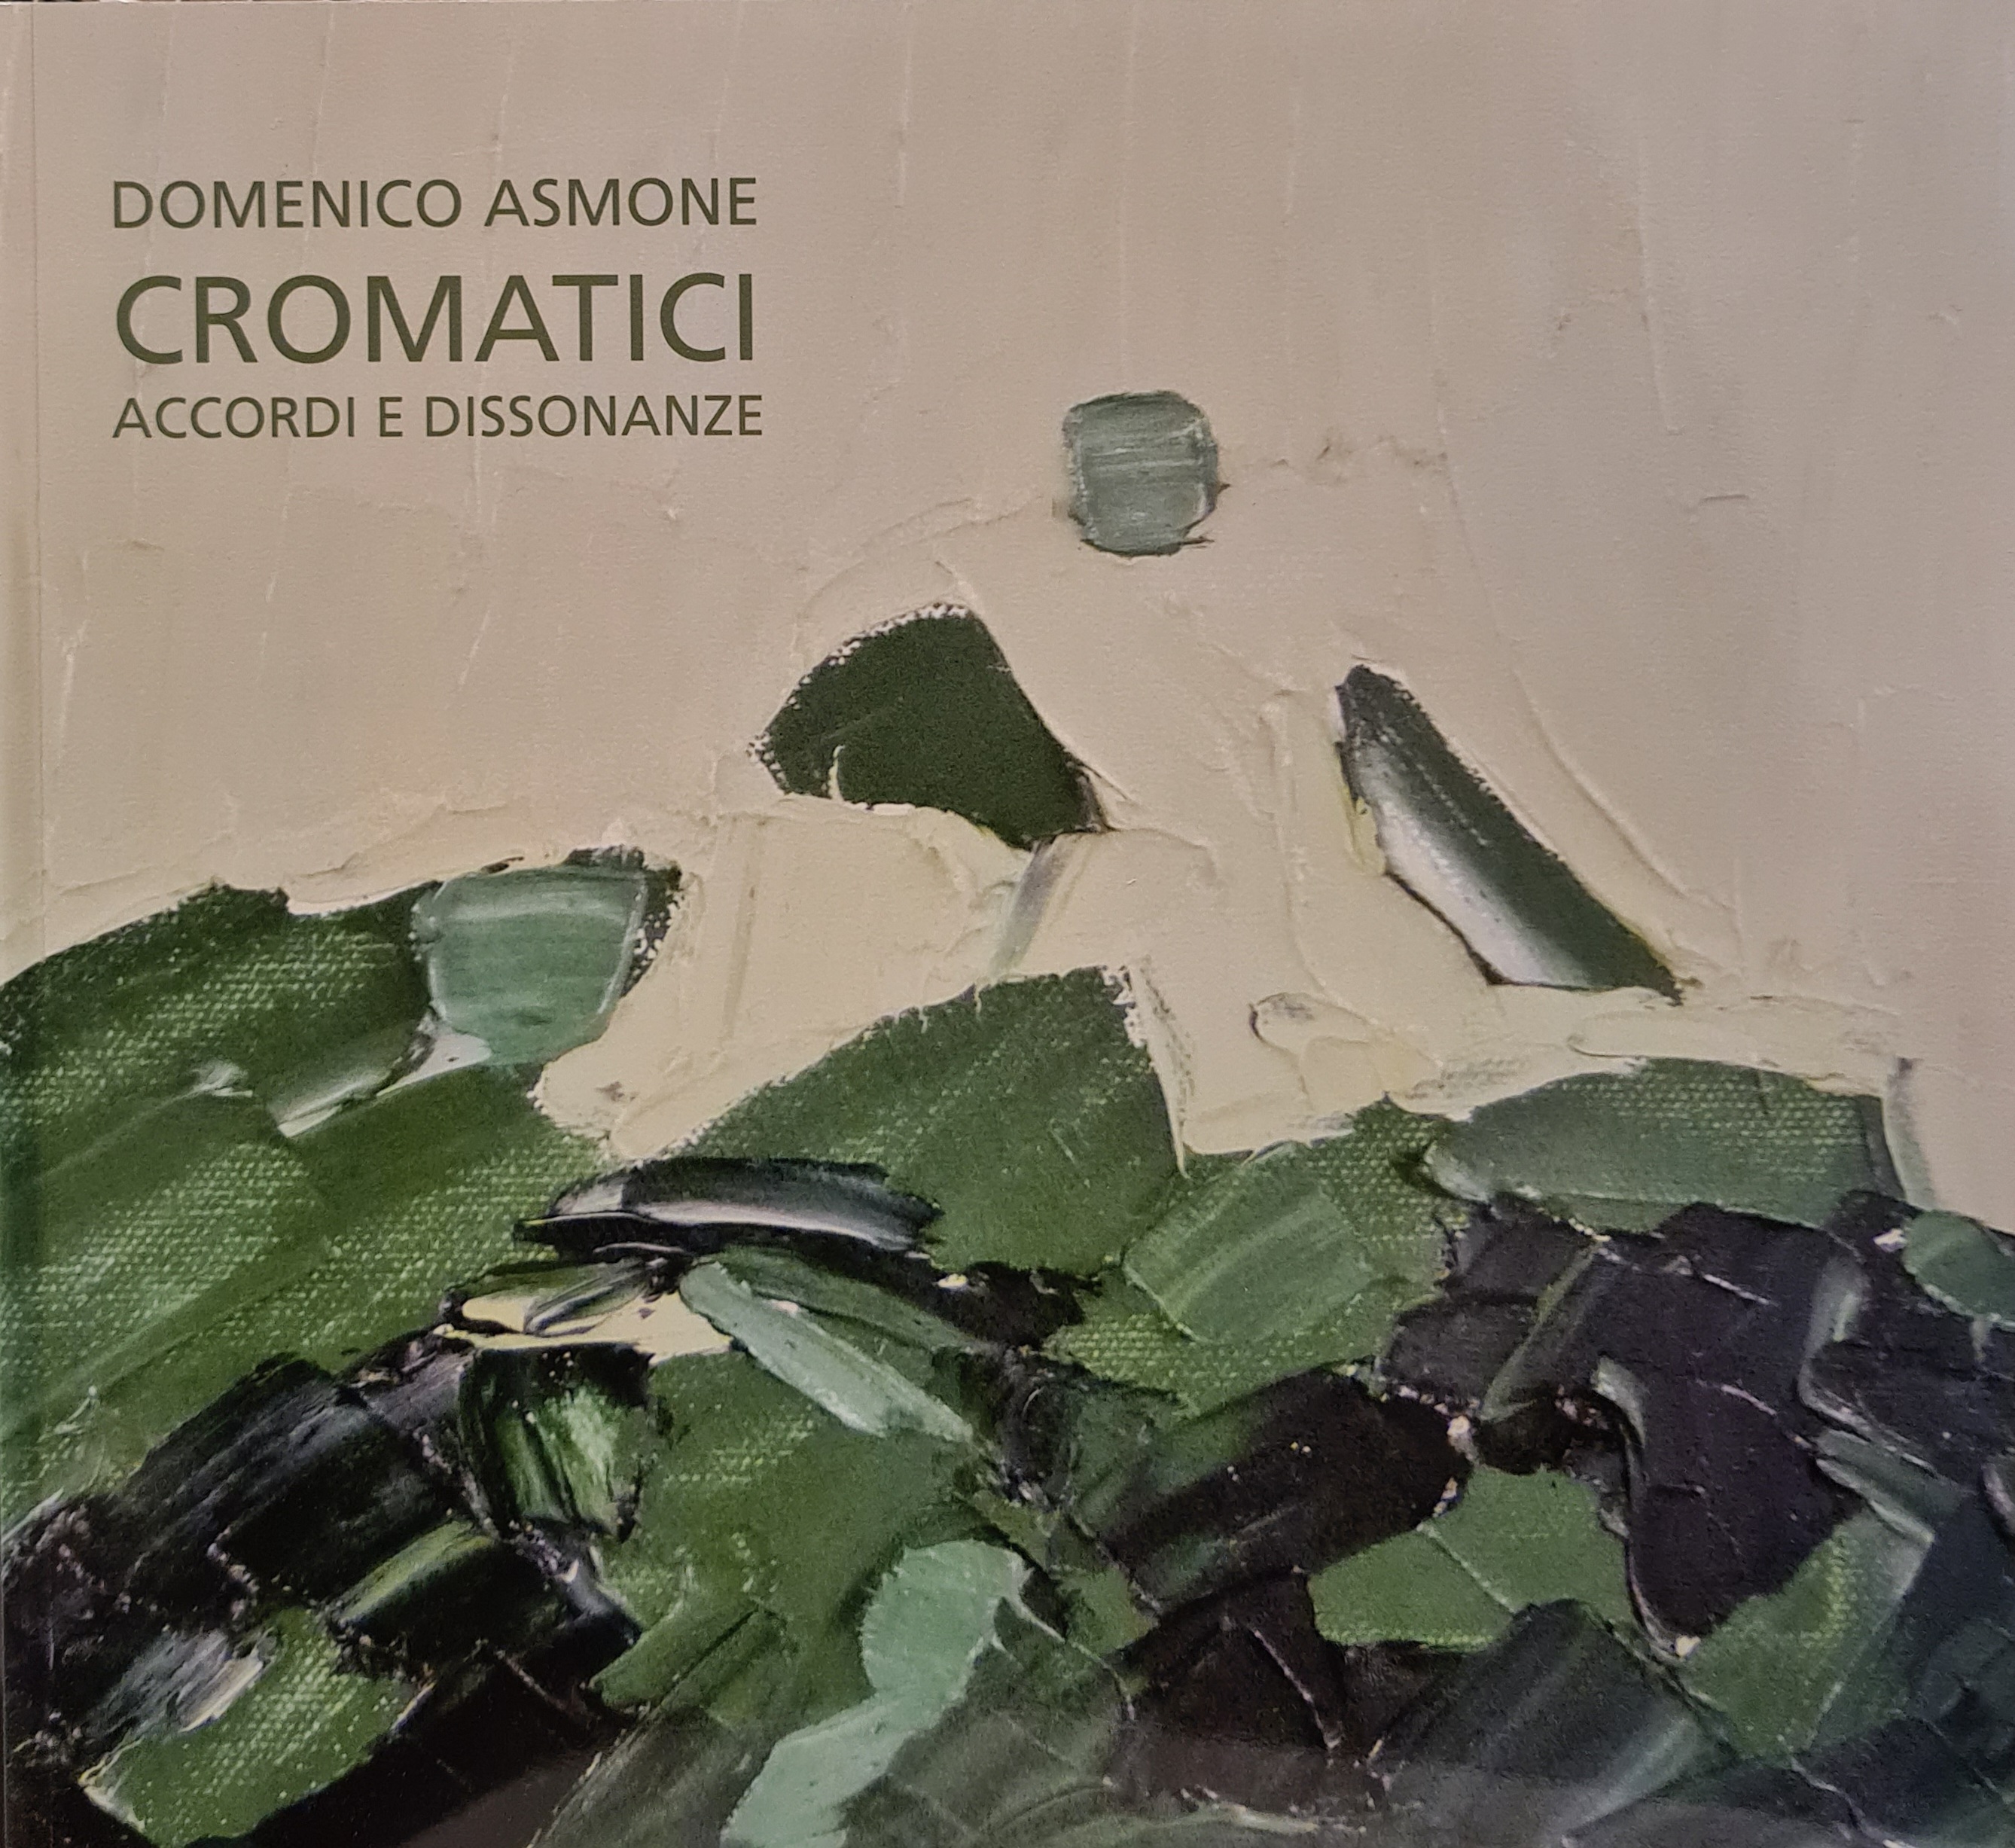 Domenico Asmone, Cromatici Accordi e dissonanze, a cura di Siliano Simoncini, Edizione Gli Ori, 2016